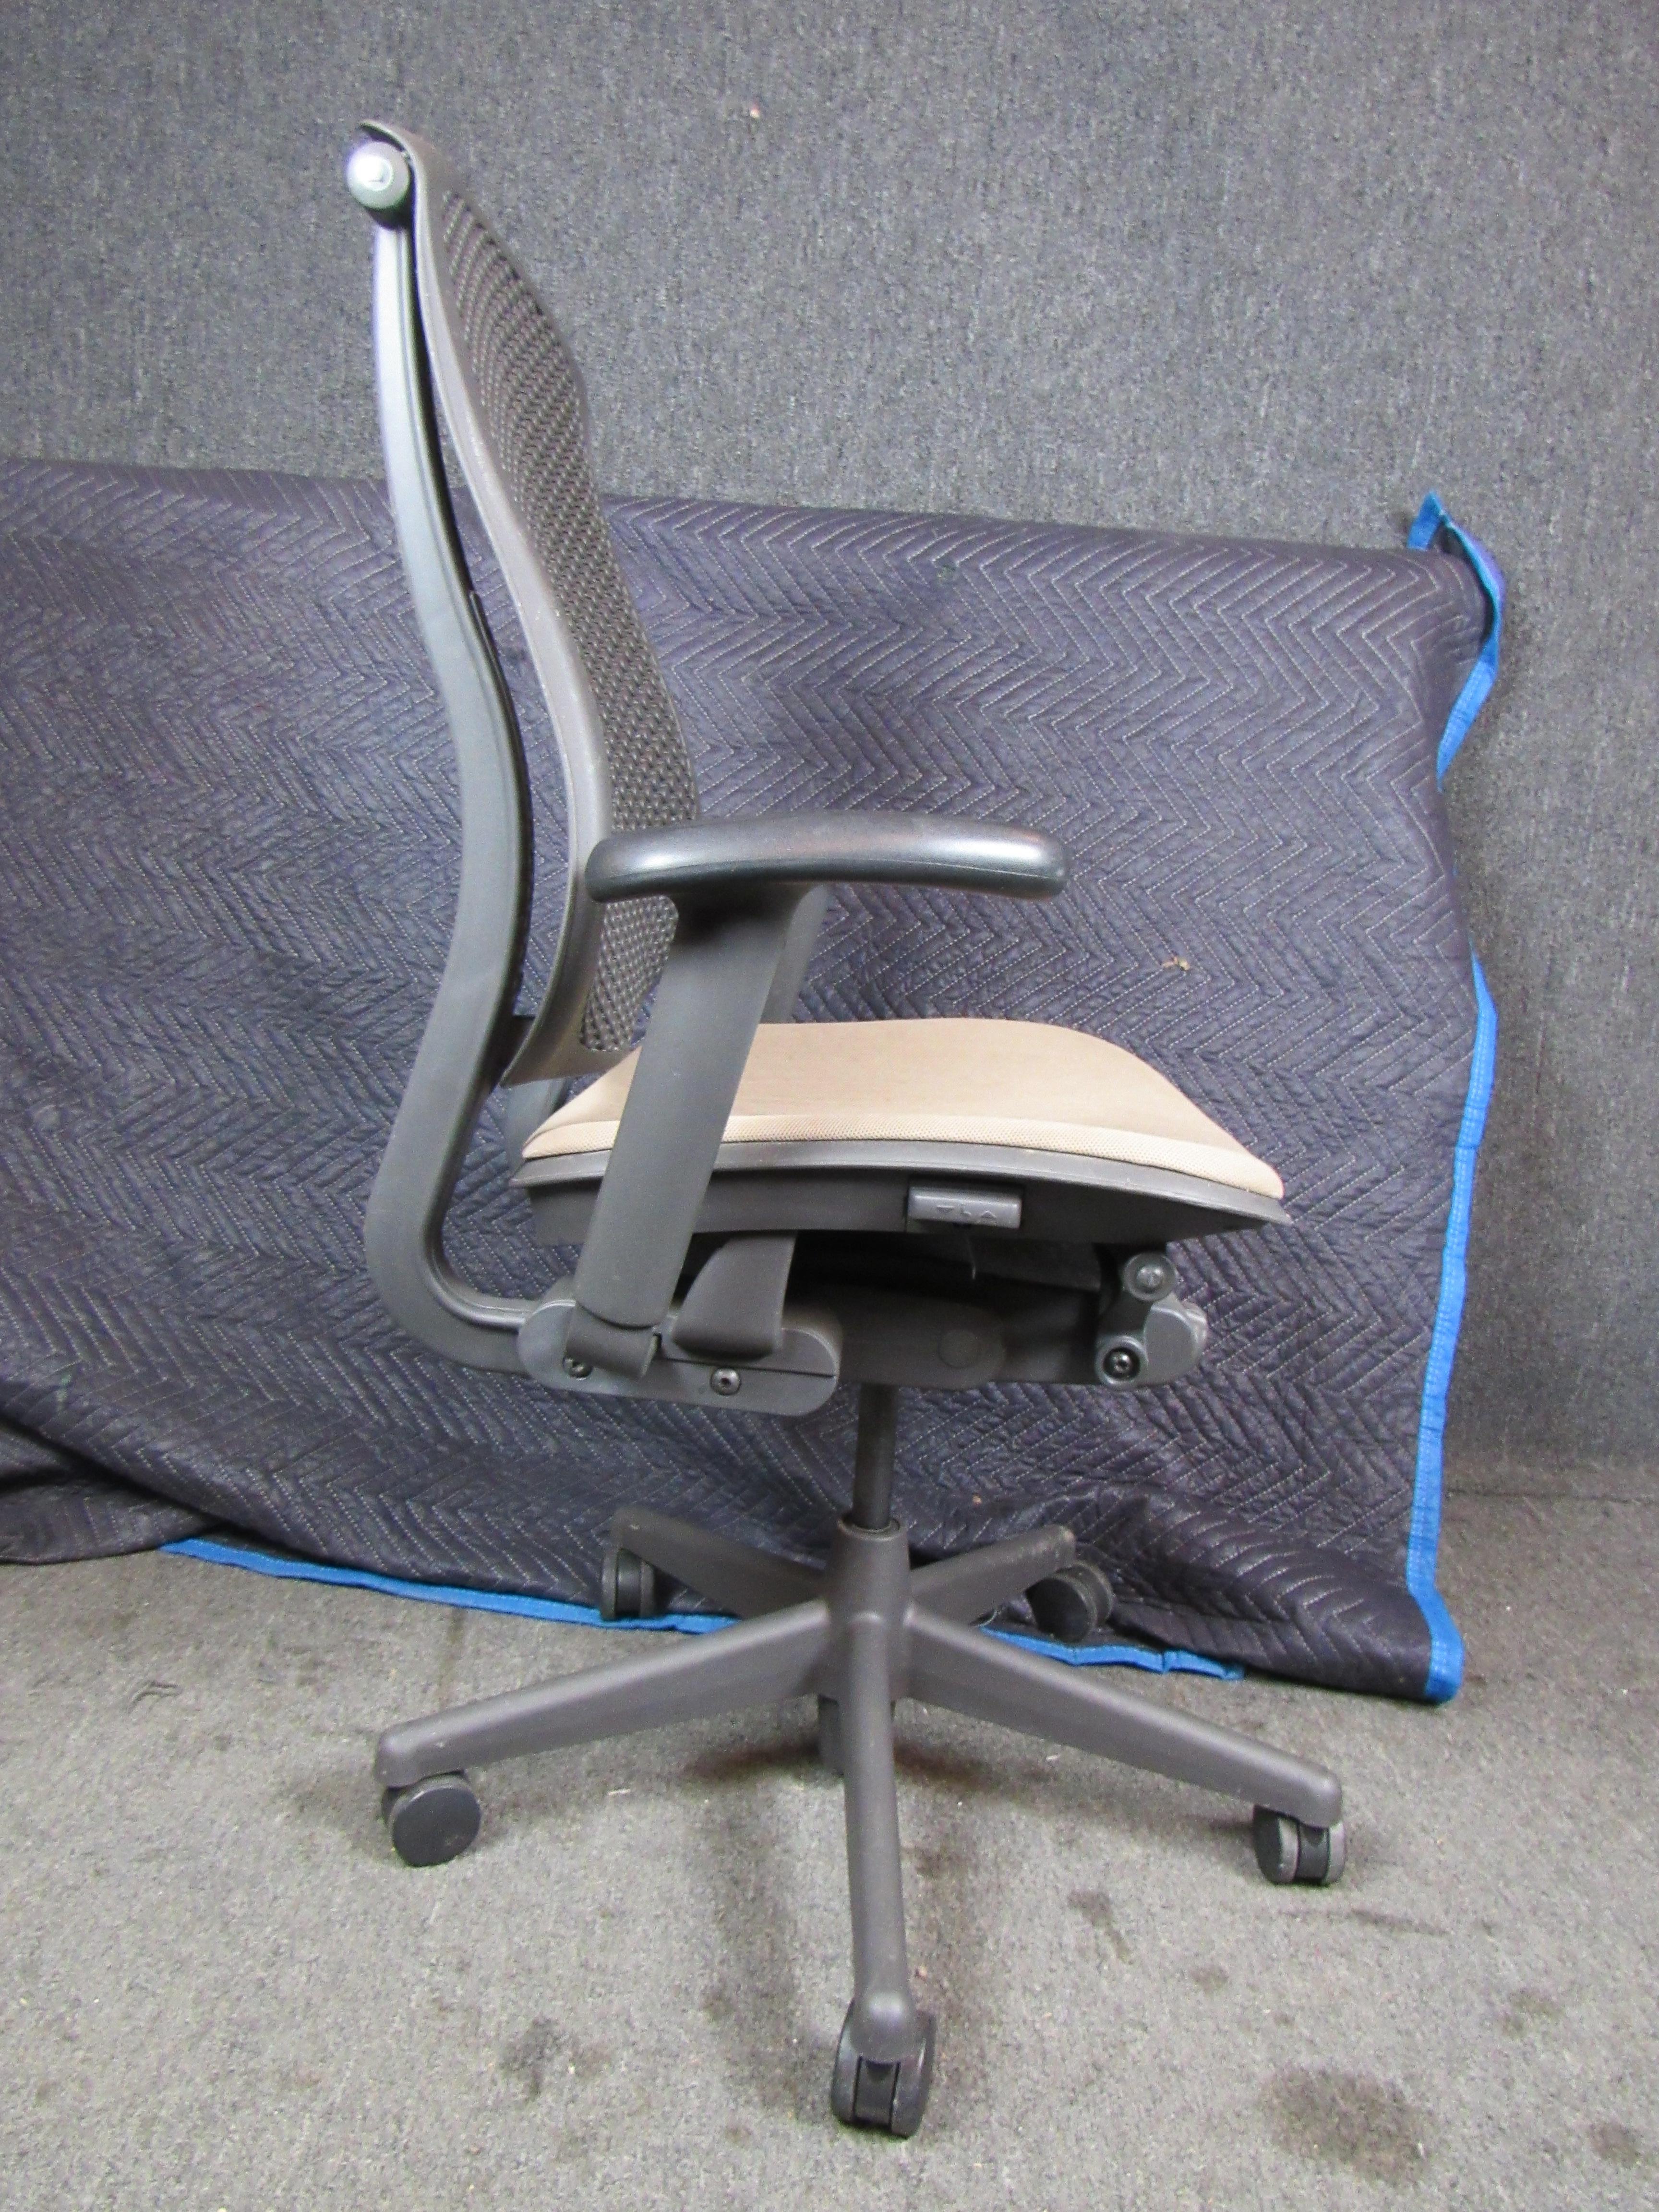 Chaise de bureau réglable simple fabriquée par Herman Miller. 
5 disponibles au total.
Veuillez confirmer le lieu NY ou NJ